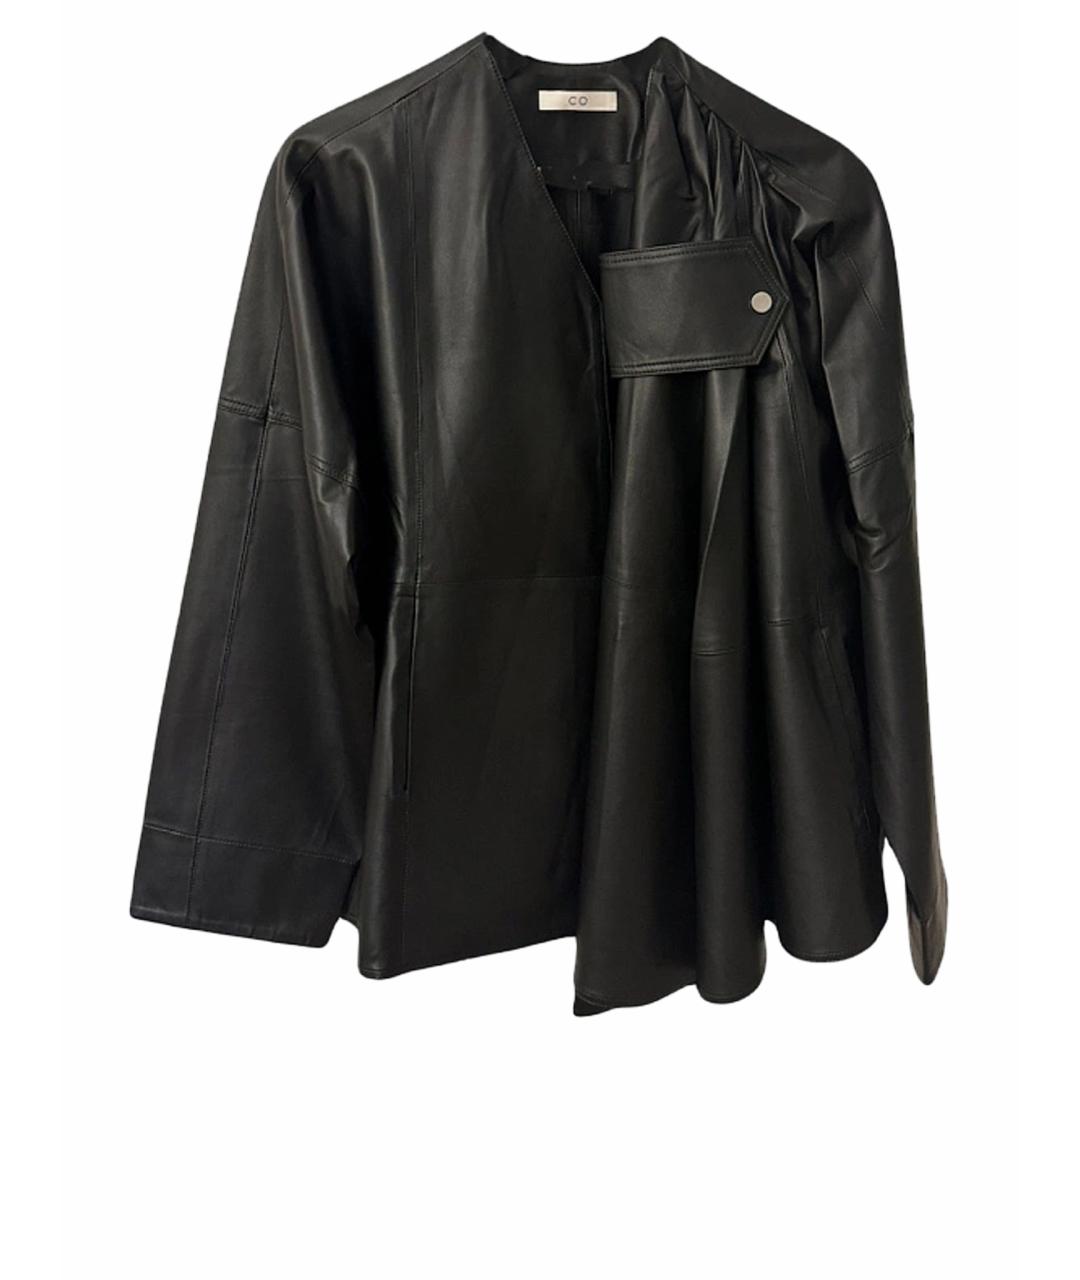 CO Черная кожаная куртка, фото 1